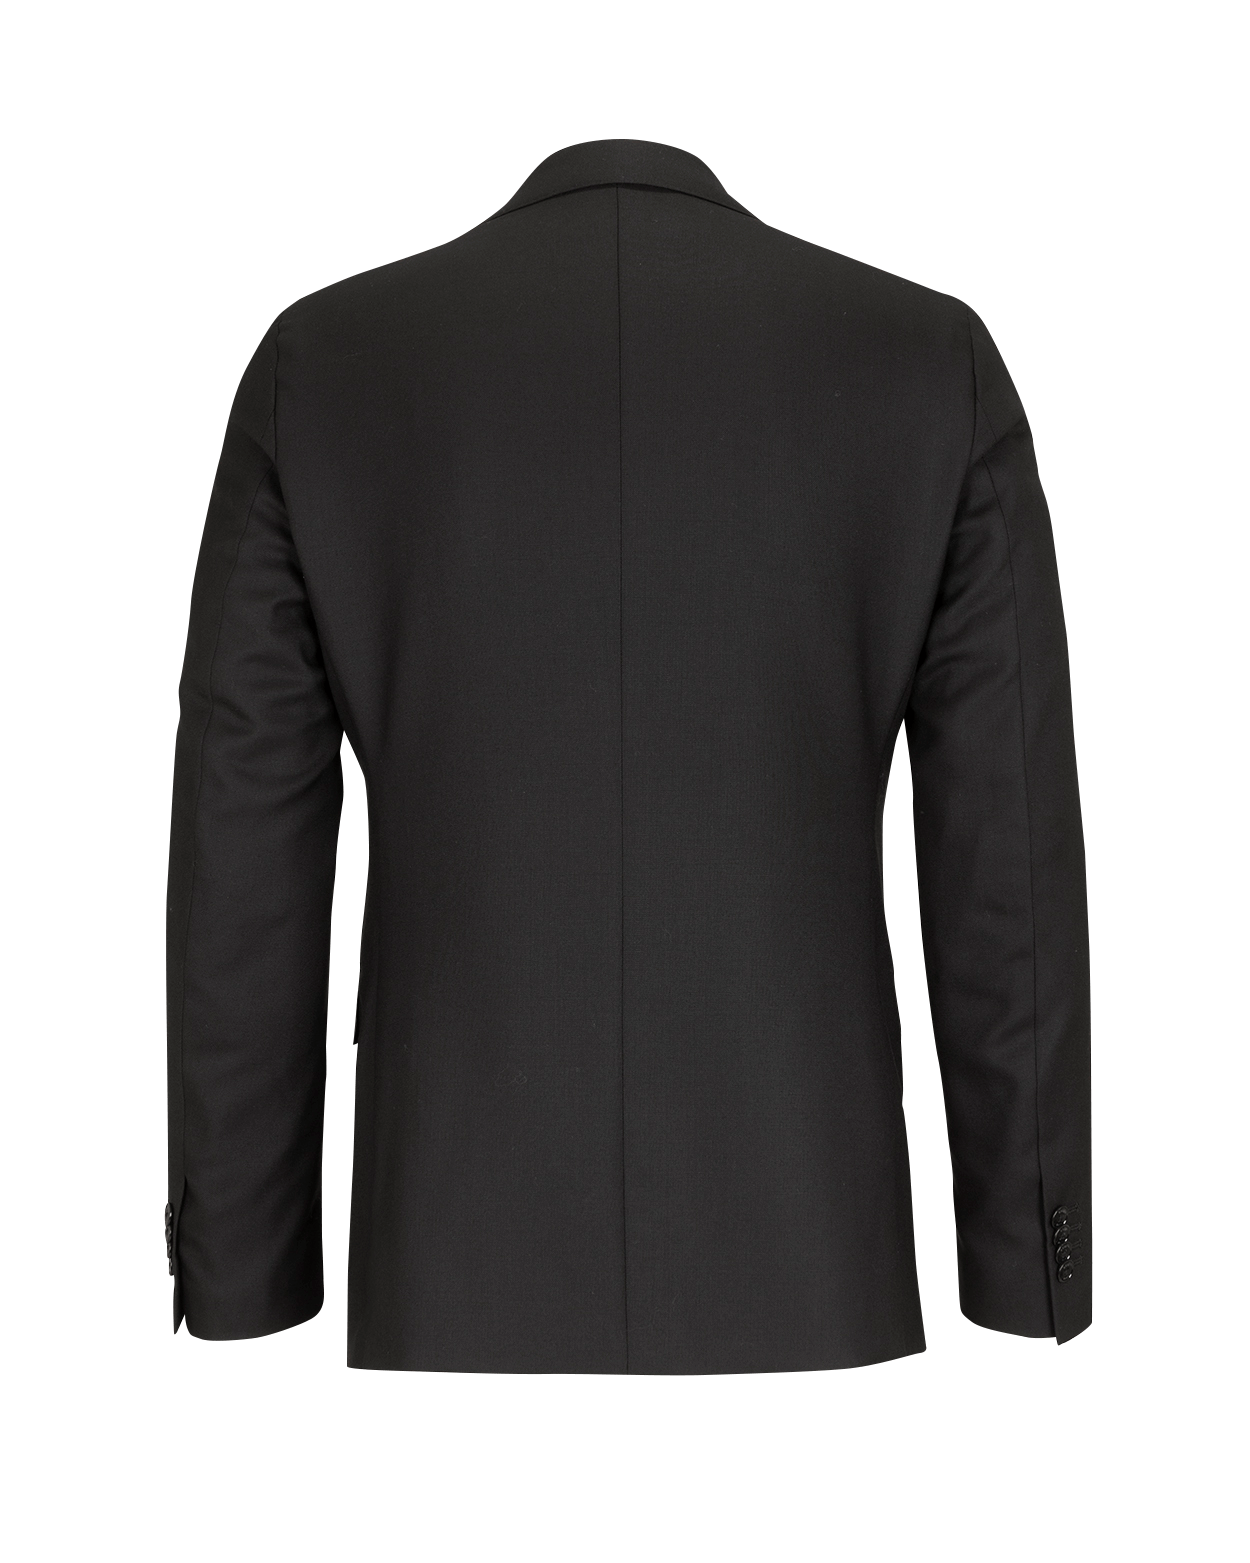 Black Hopsack Wool Suit